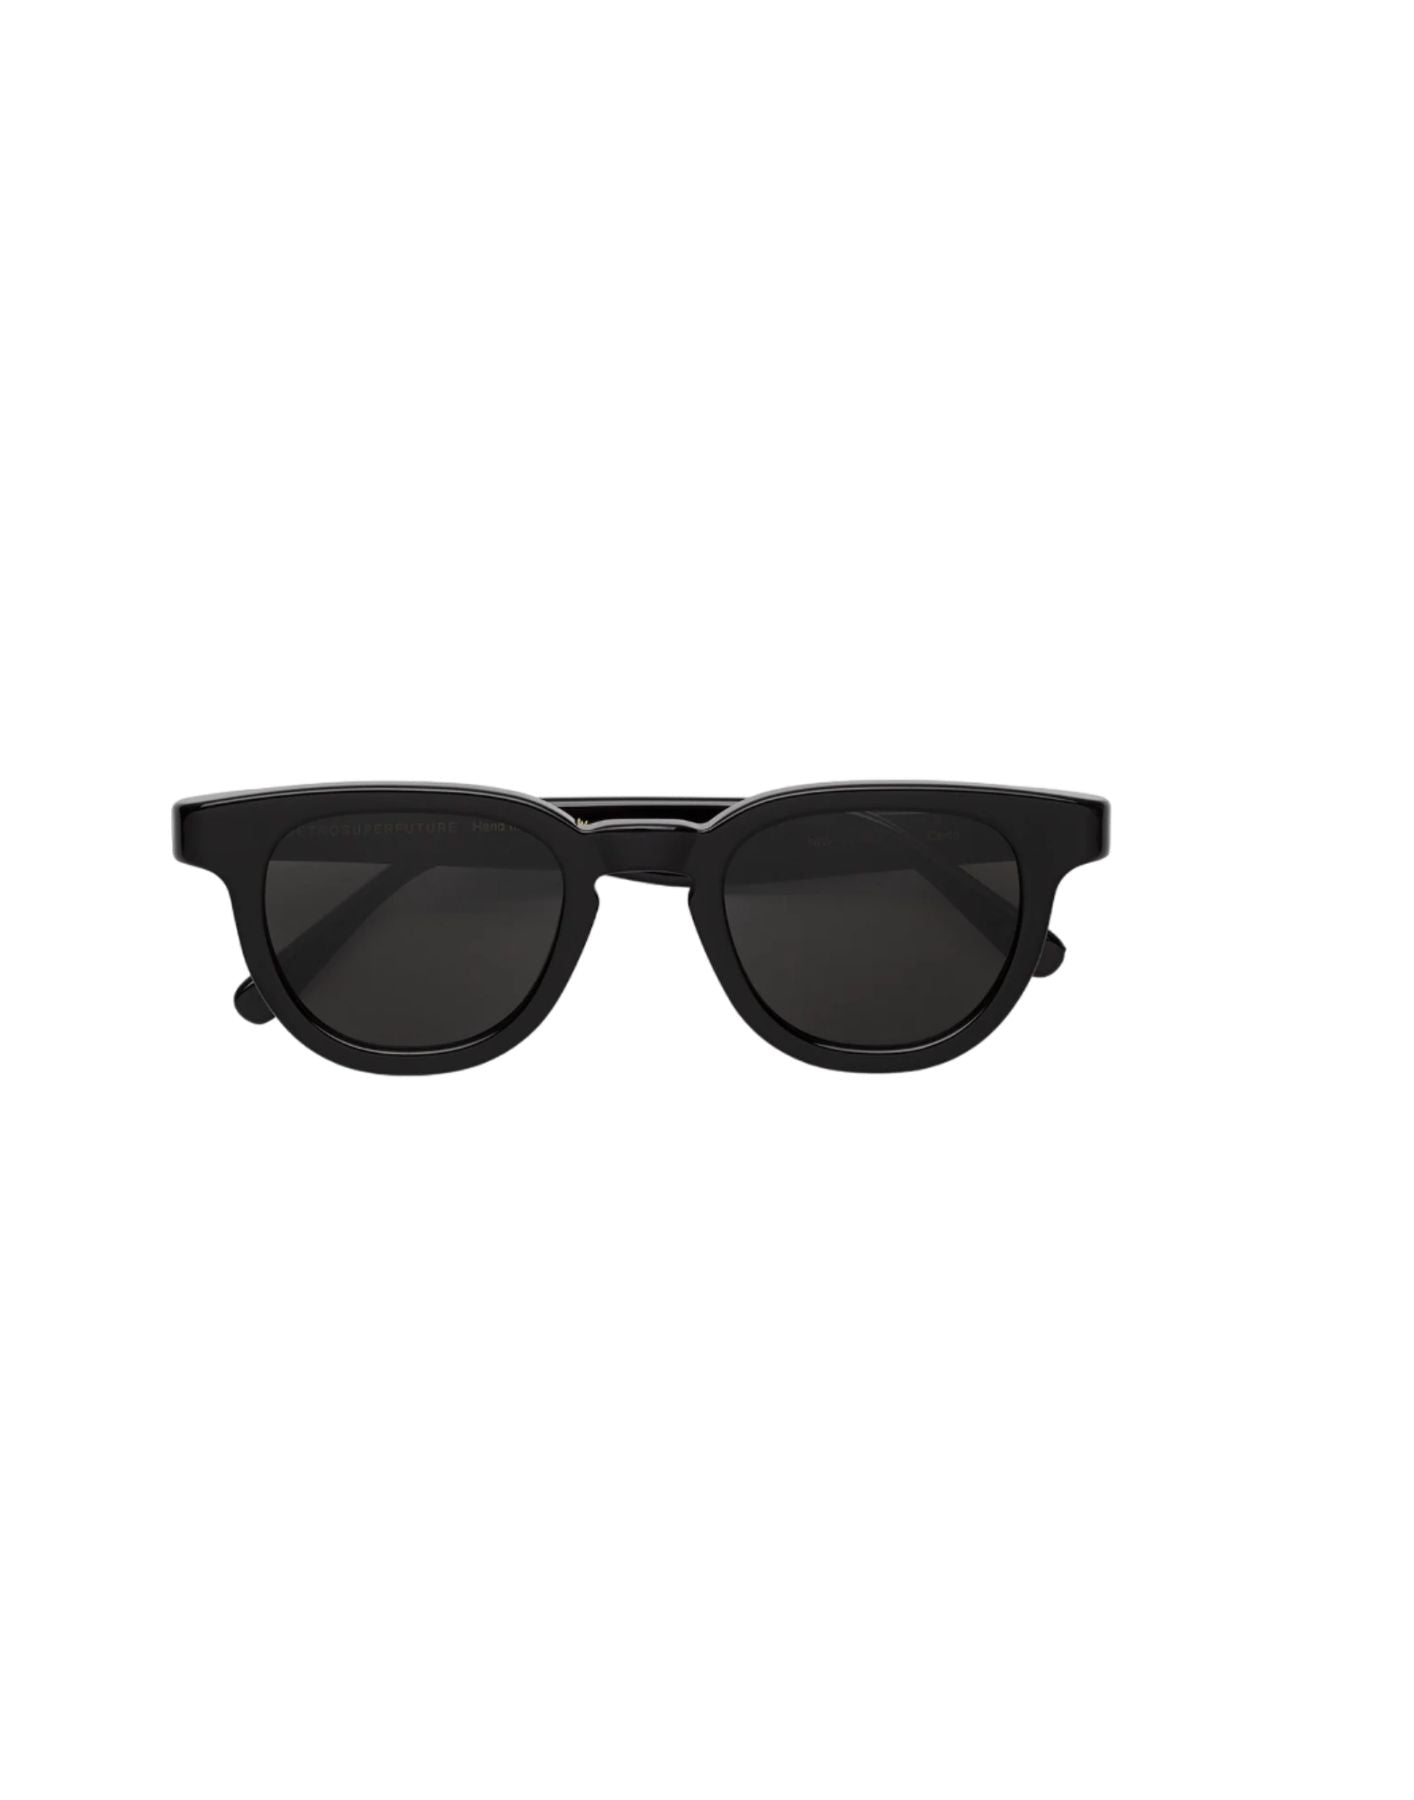 Sunglasses unisex CERTO BLACK NIW Retrosuperfuture